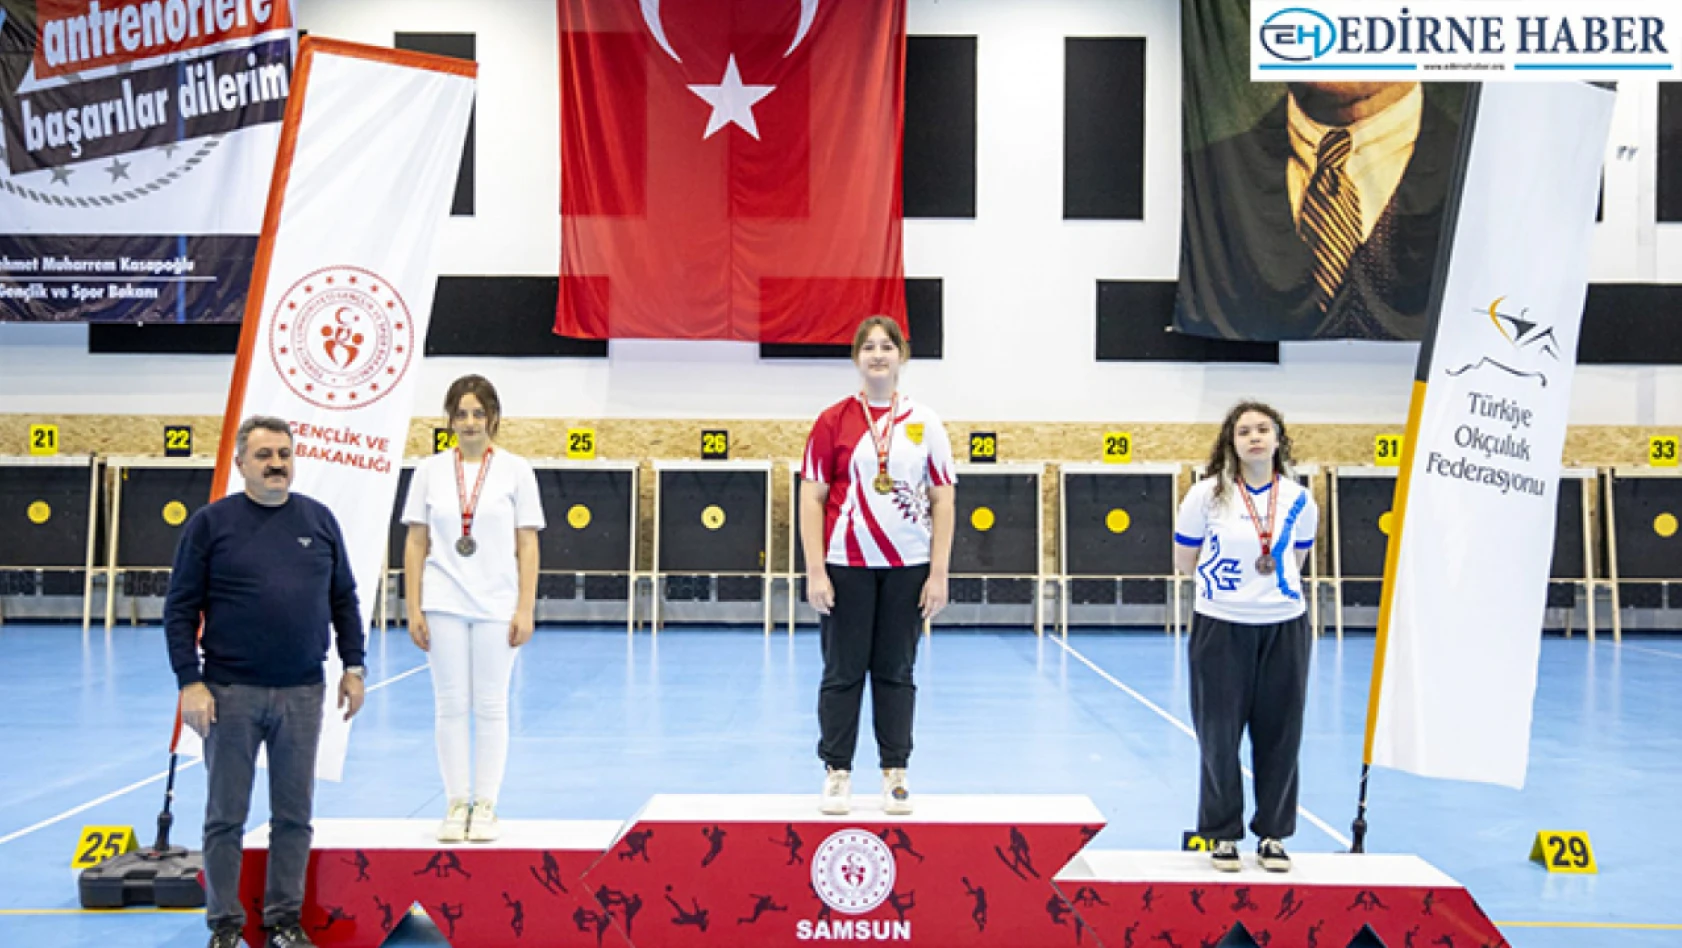 TED Edirne Koleji Öğrencisi Türkiye Şampiyonu Oldu